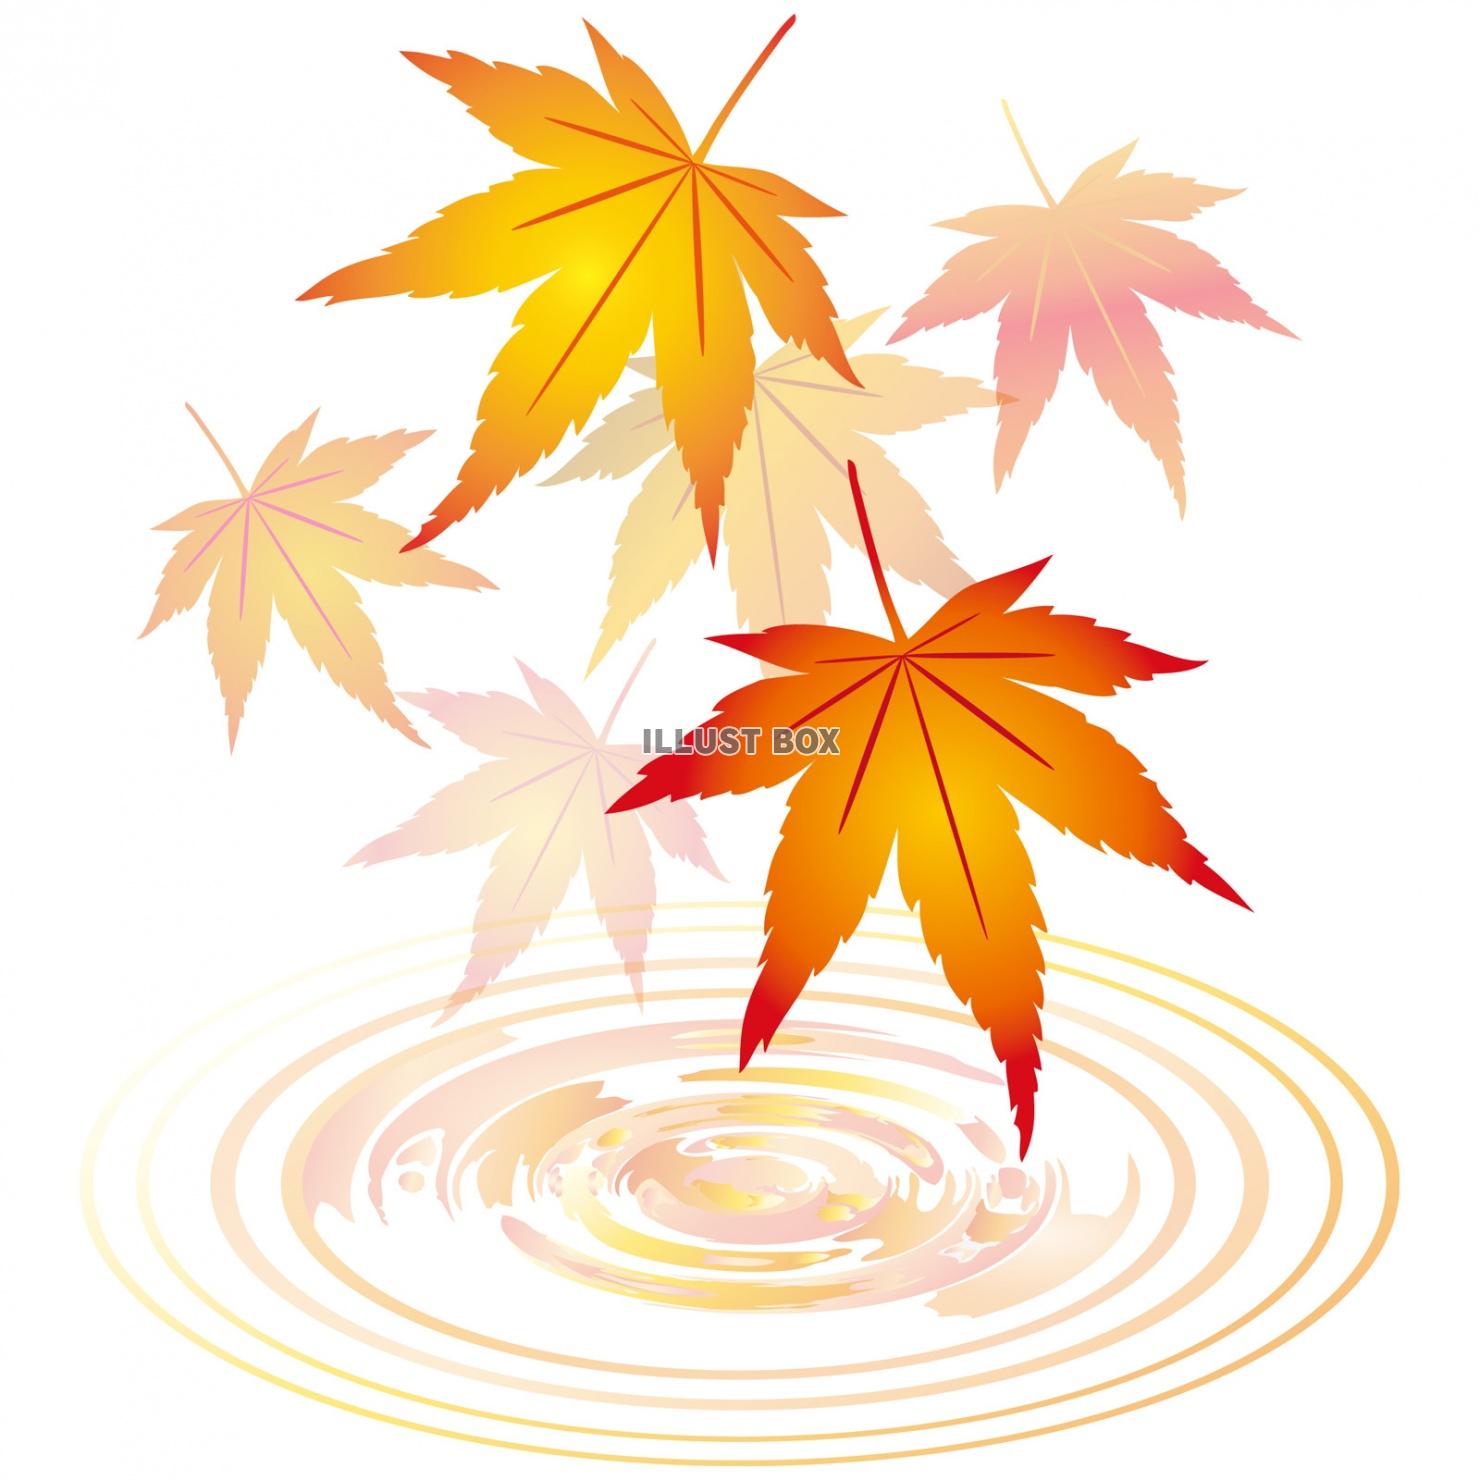 無料イラスト 紅葉もみじ飾り装飾水面10月11月モミジ葉っぱ植物楓